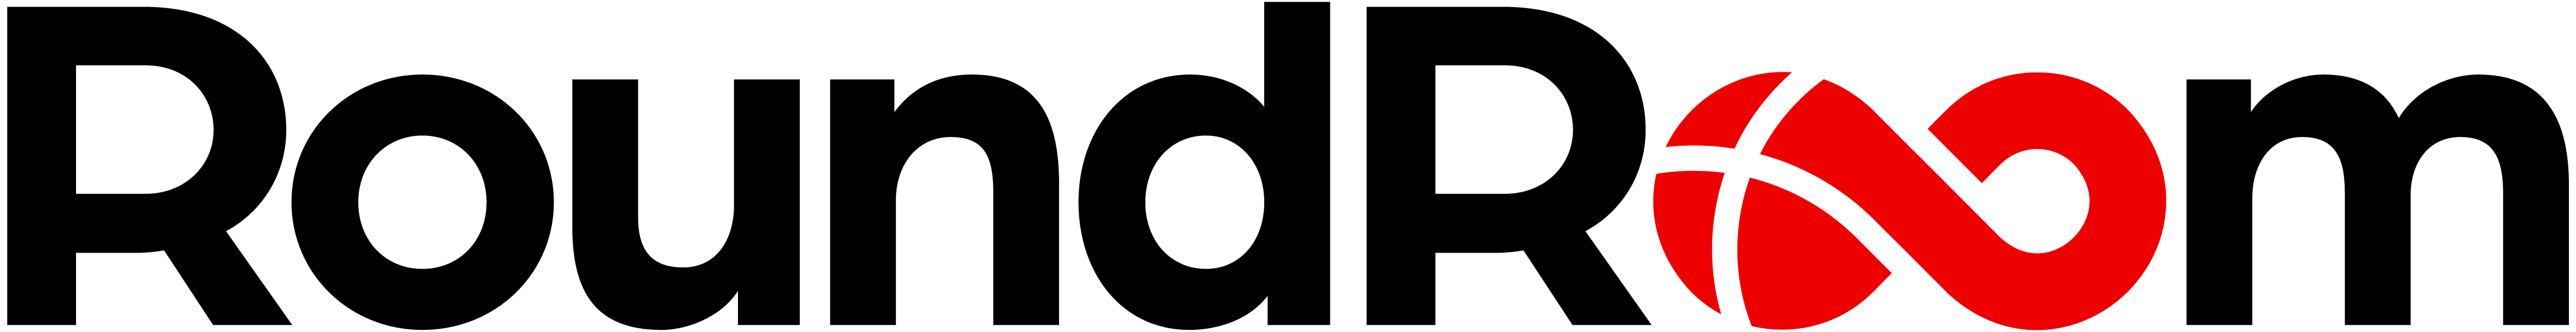 round-room-logo